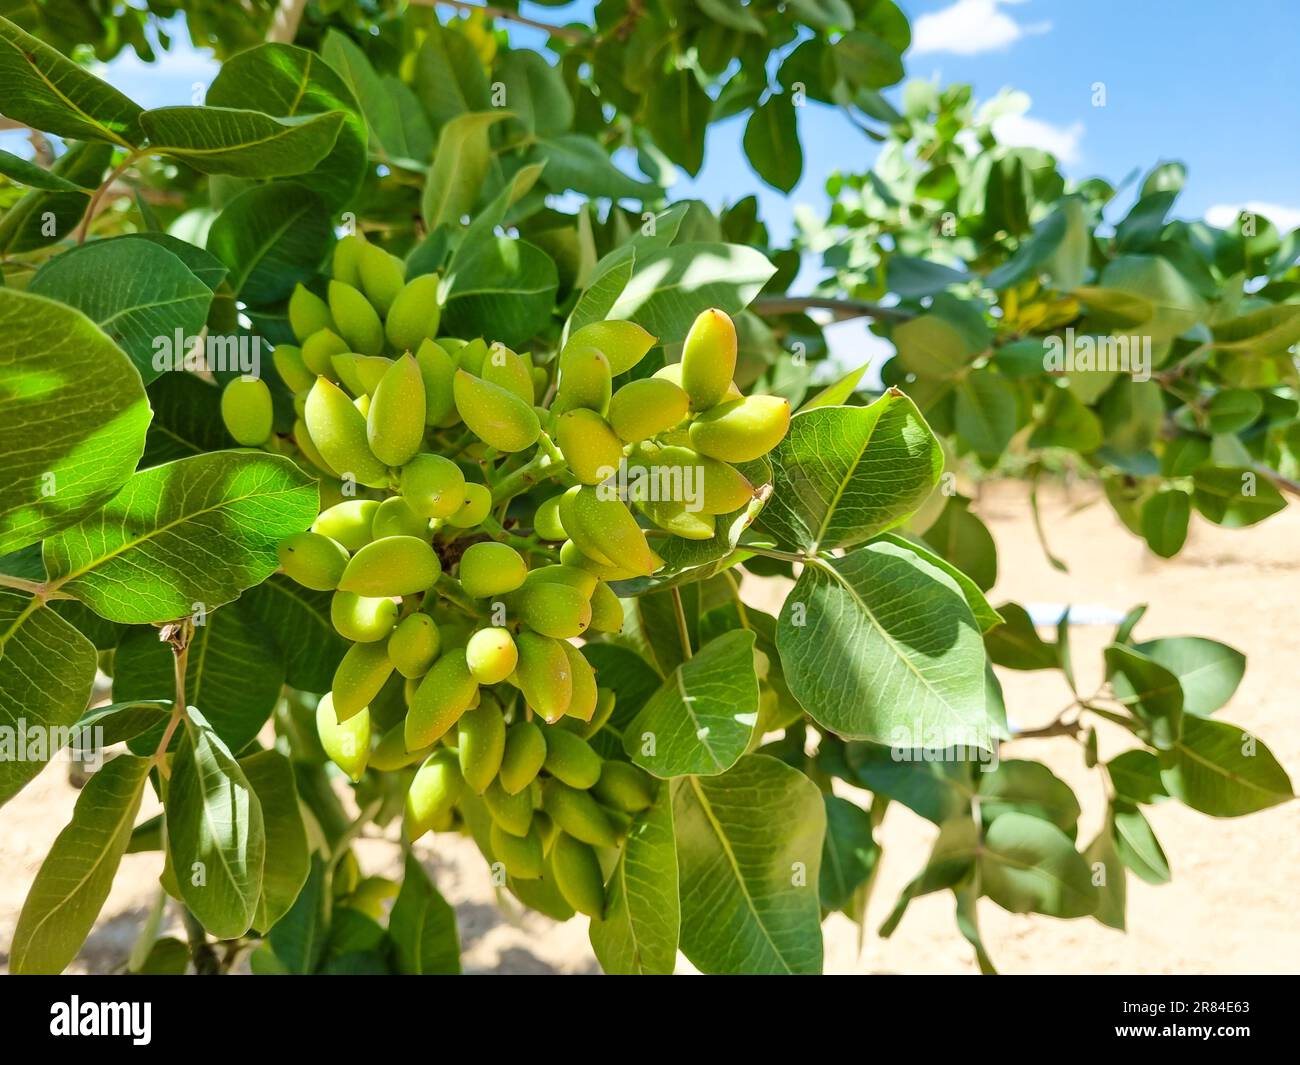 Jeunes pistaches vertes fraîches sur l'arbre Banque D'Images